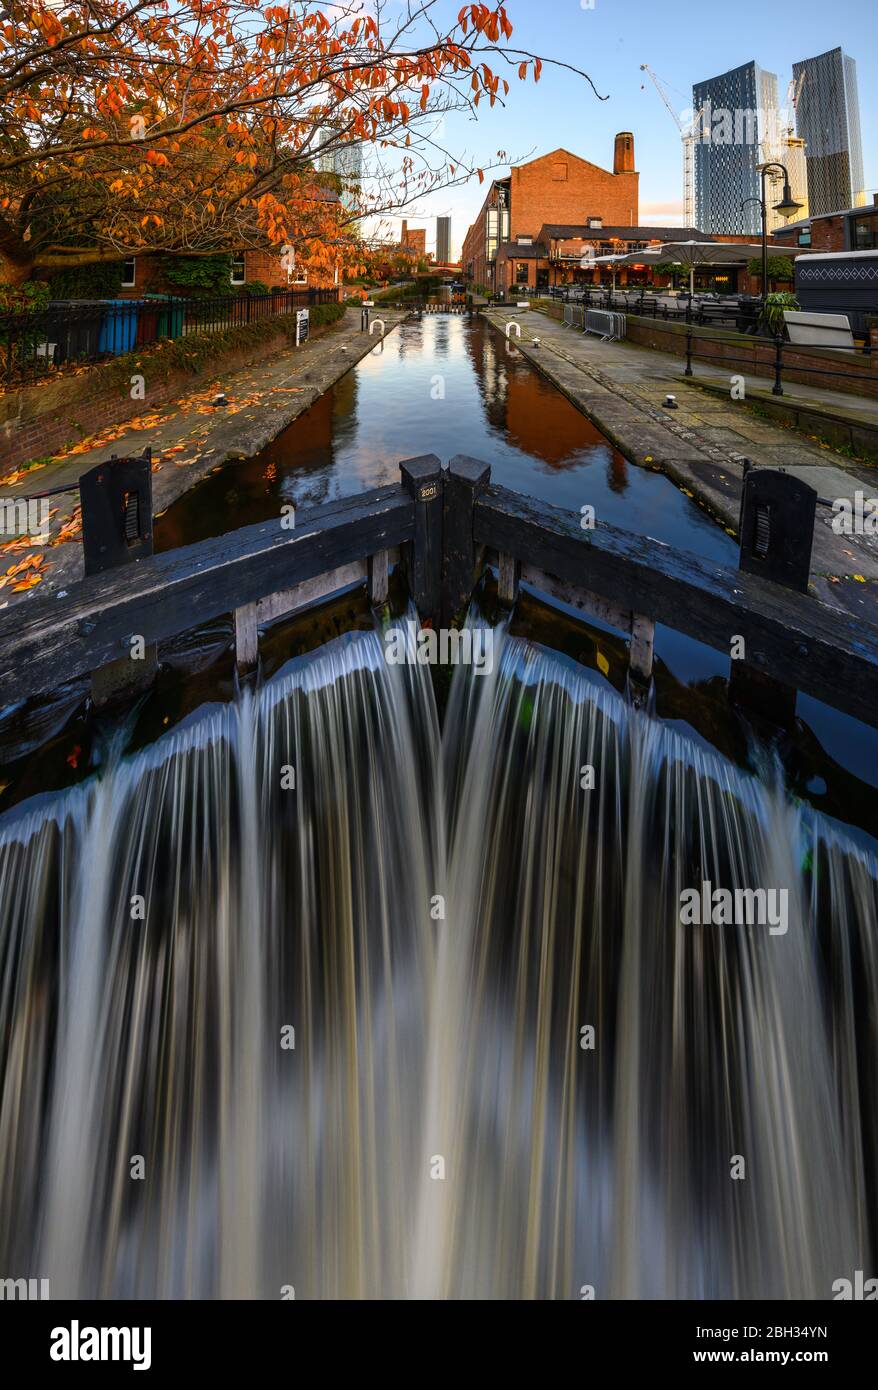 Brücke Wasserkanal in einem Innenstadtschutzgebiet, Manchester, England, Großbritannien Stockfoto